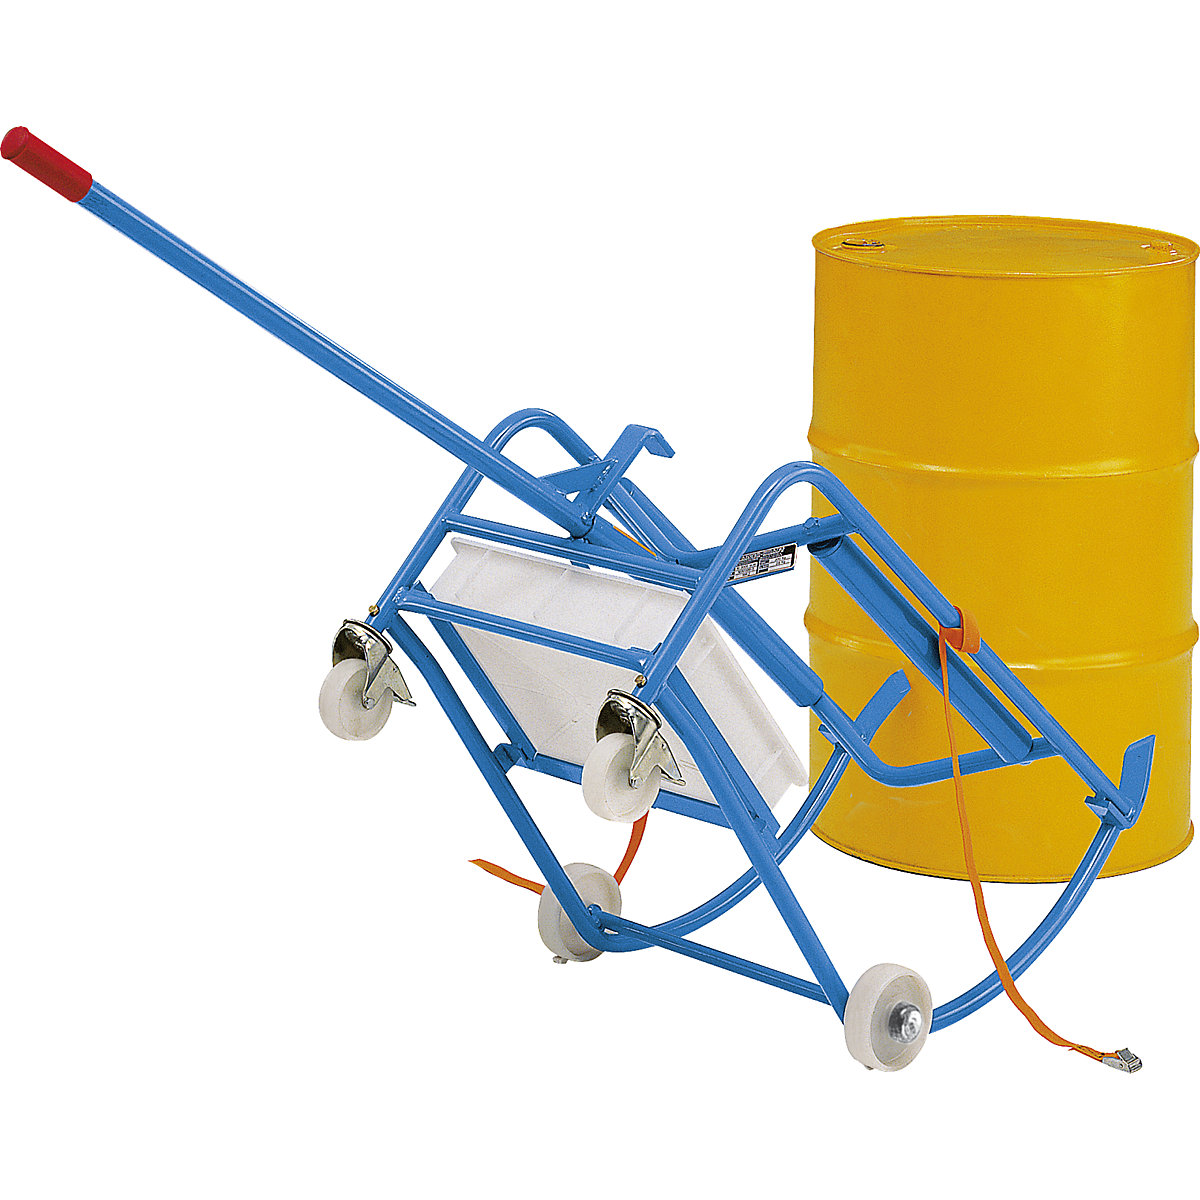 EUROKRAFTpro – Basculador para bidão de 200 litros, apoio para bidões com 2 rodas de metal, com cuba coletora de óleo